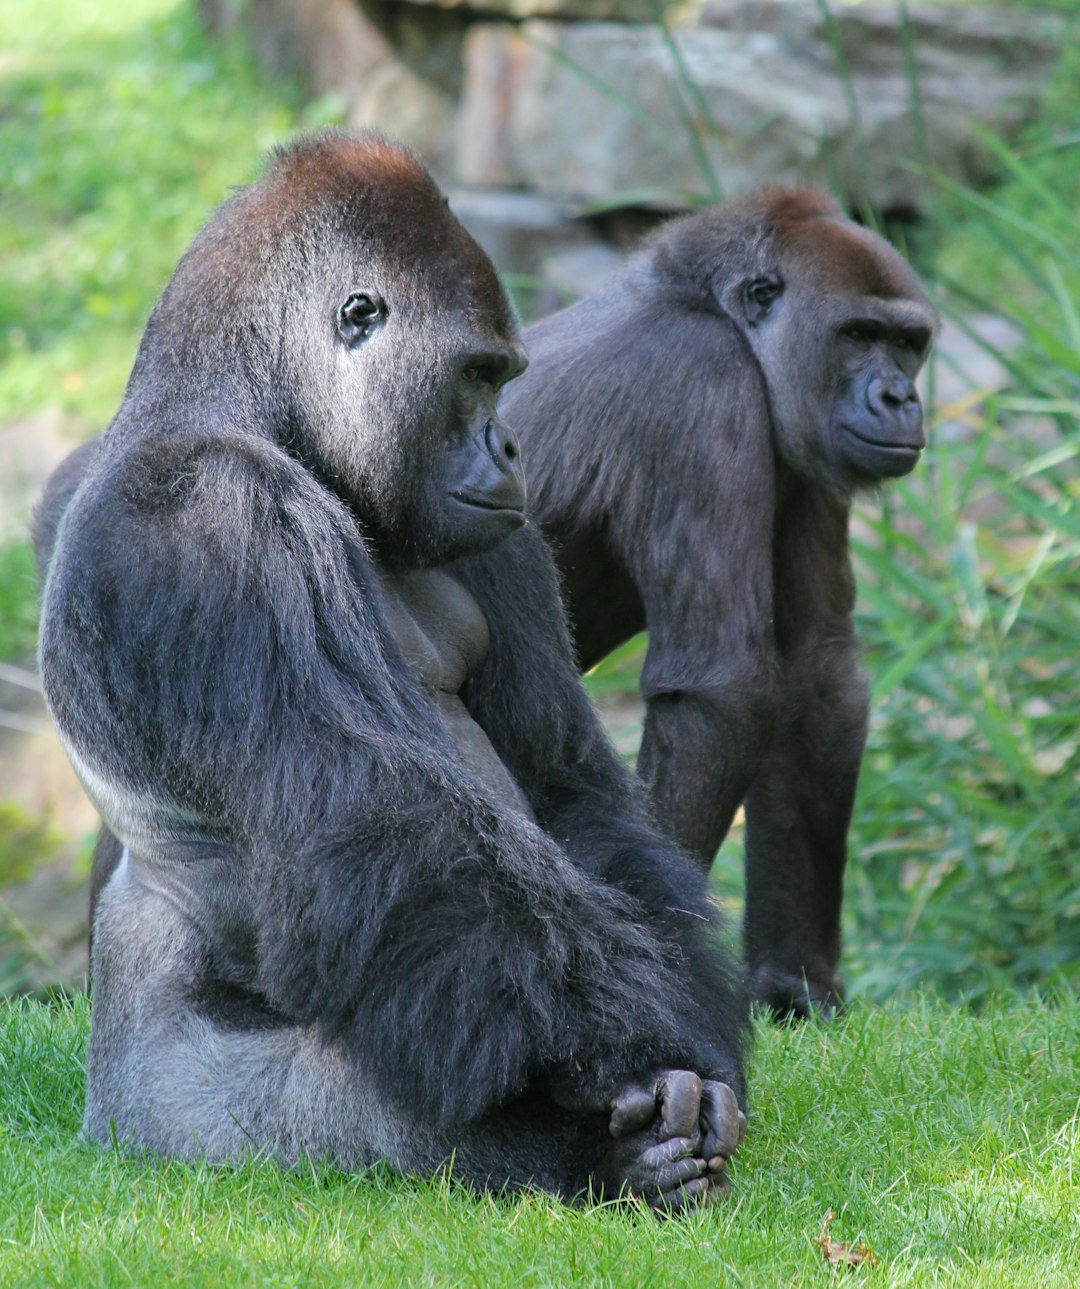  two brown gorillas on grass field gorilla